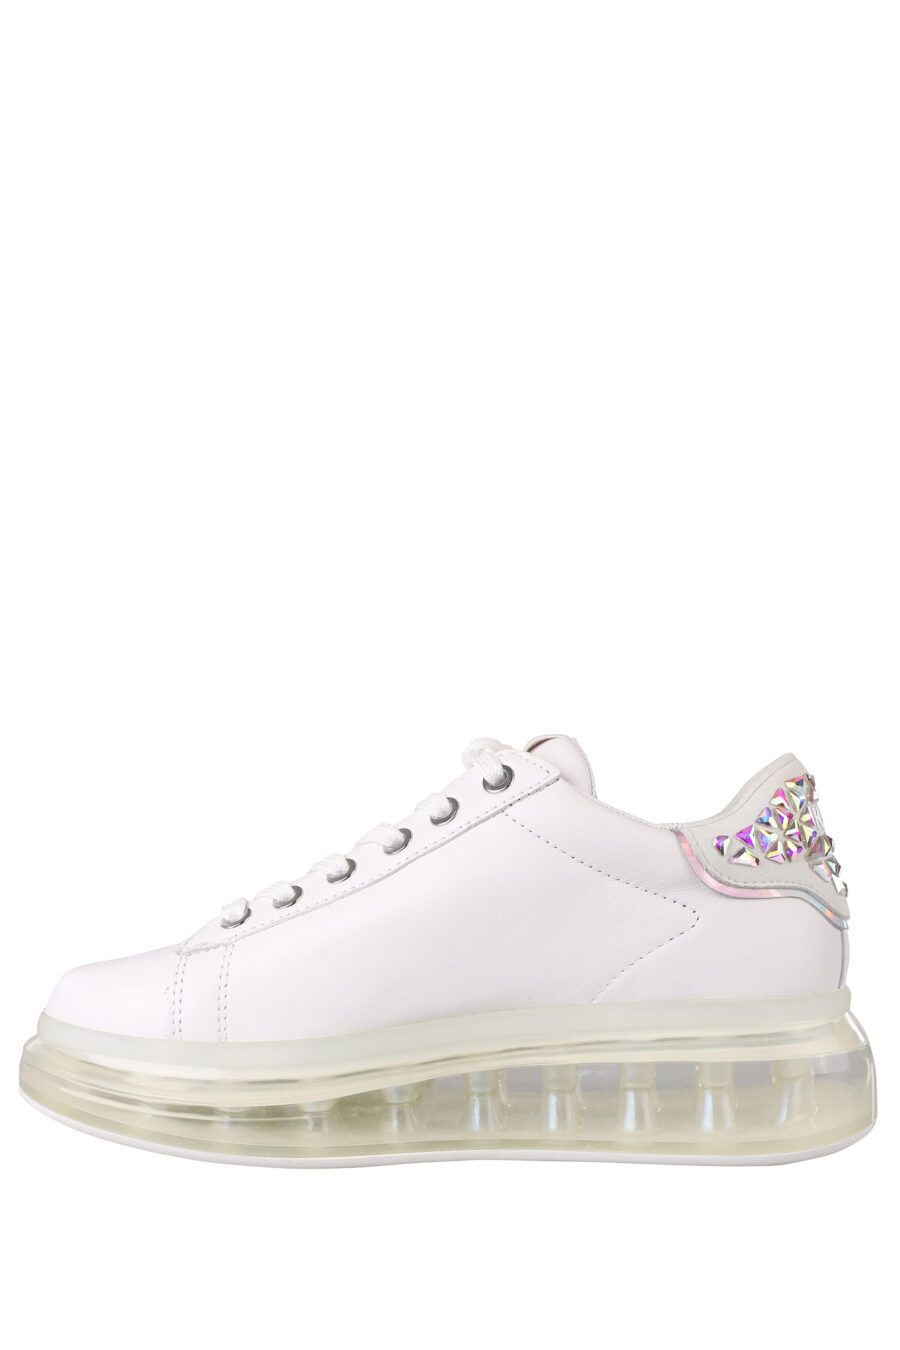 Zapatillas blancas con suela transparente y detalles en strass - IMG 1353